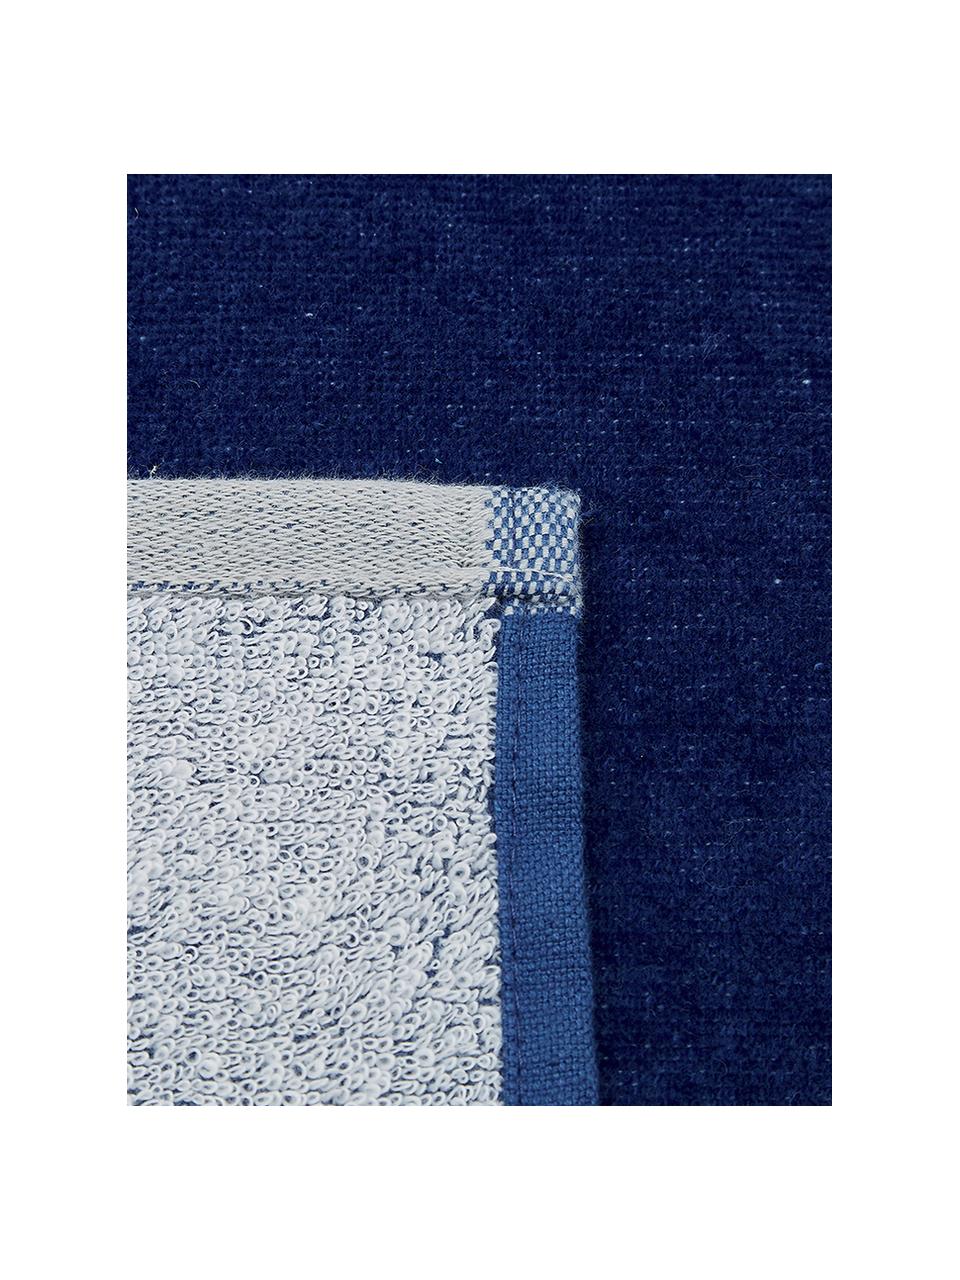 Strandtuch Spork mit Sternen-Motiv, 100% Baumwolle
leichte Qualität 380 g/m², Blau, Weiss, 80 x 160 cm